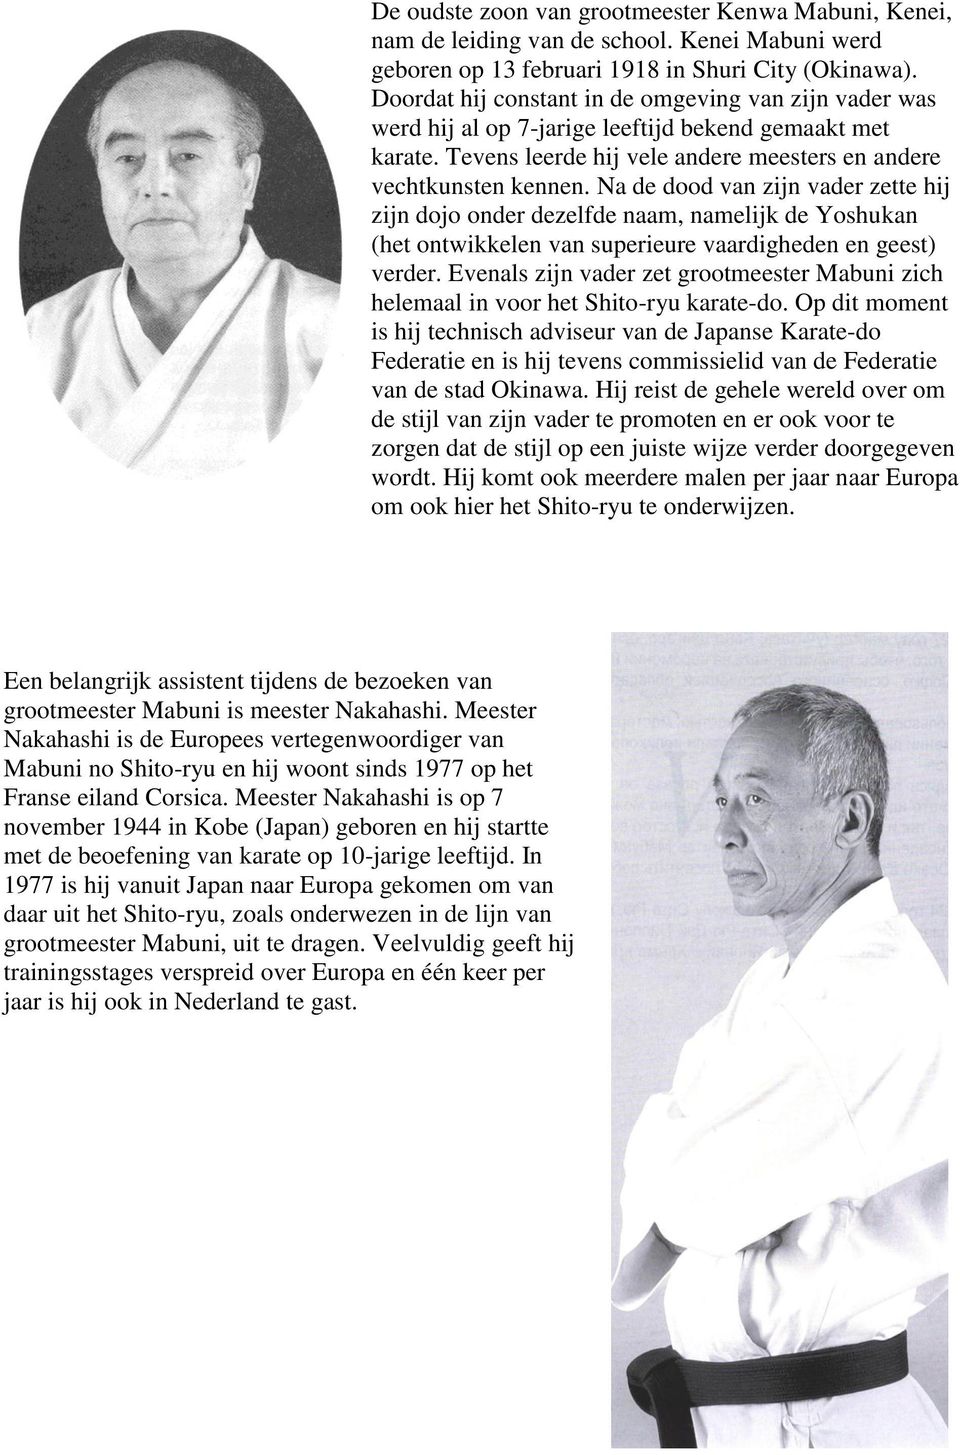 Meester Nakahashi is op 7 november 1944 in Kobe (Japan) geboren en hij startte met de beoefening van karate op 10-jarige leeftijd.